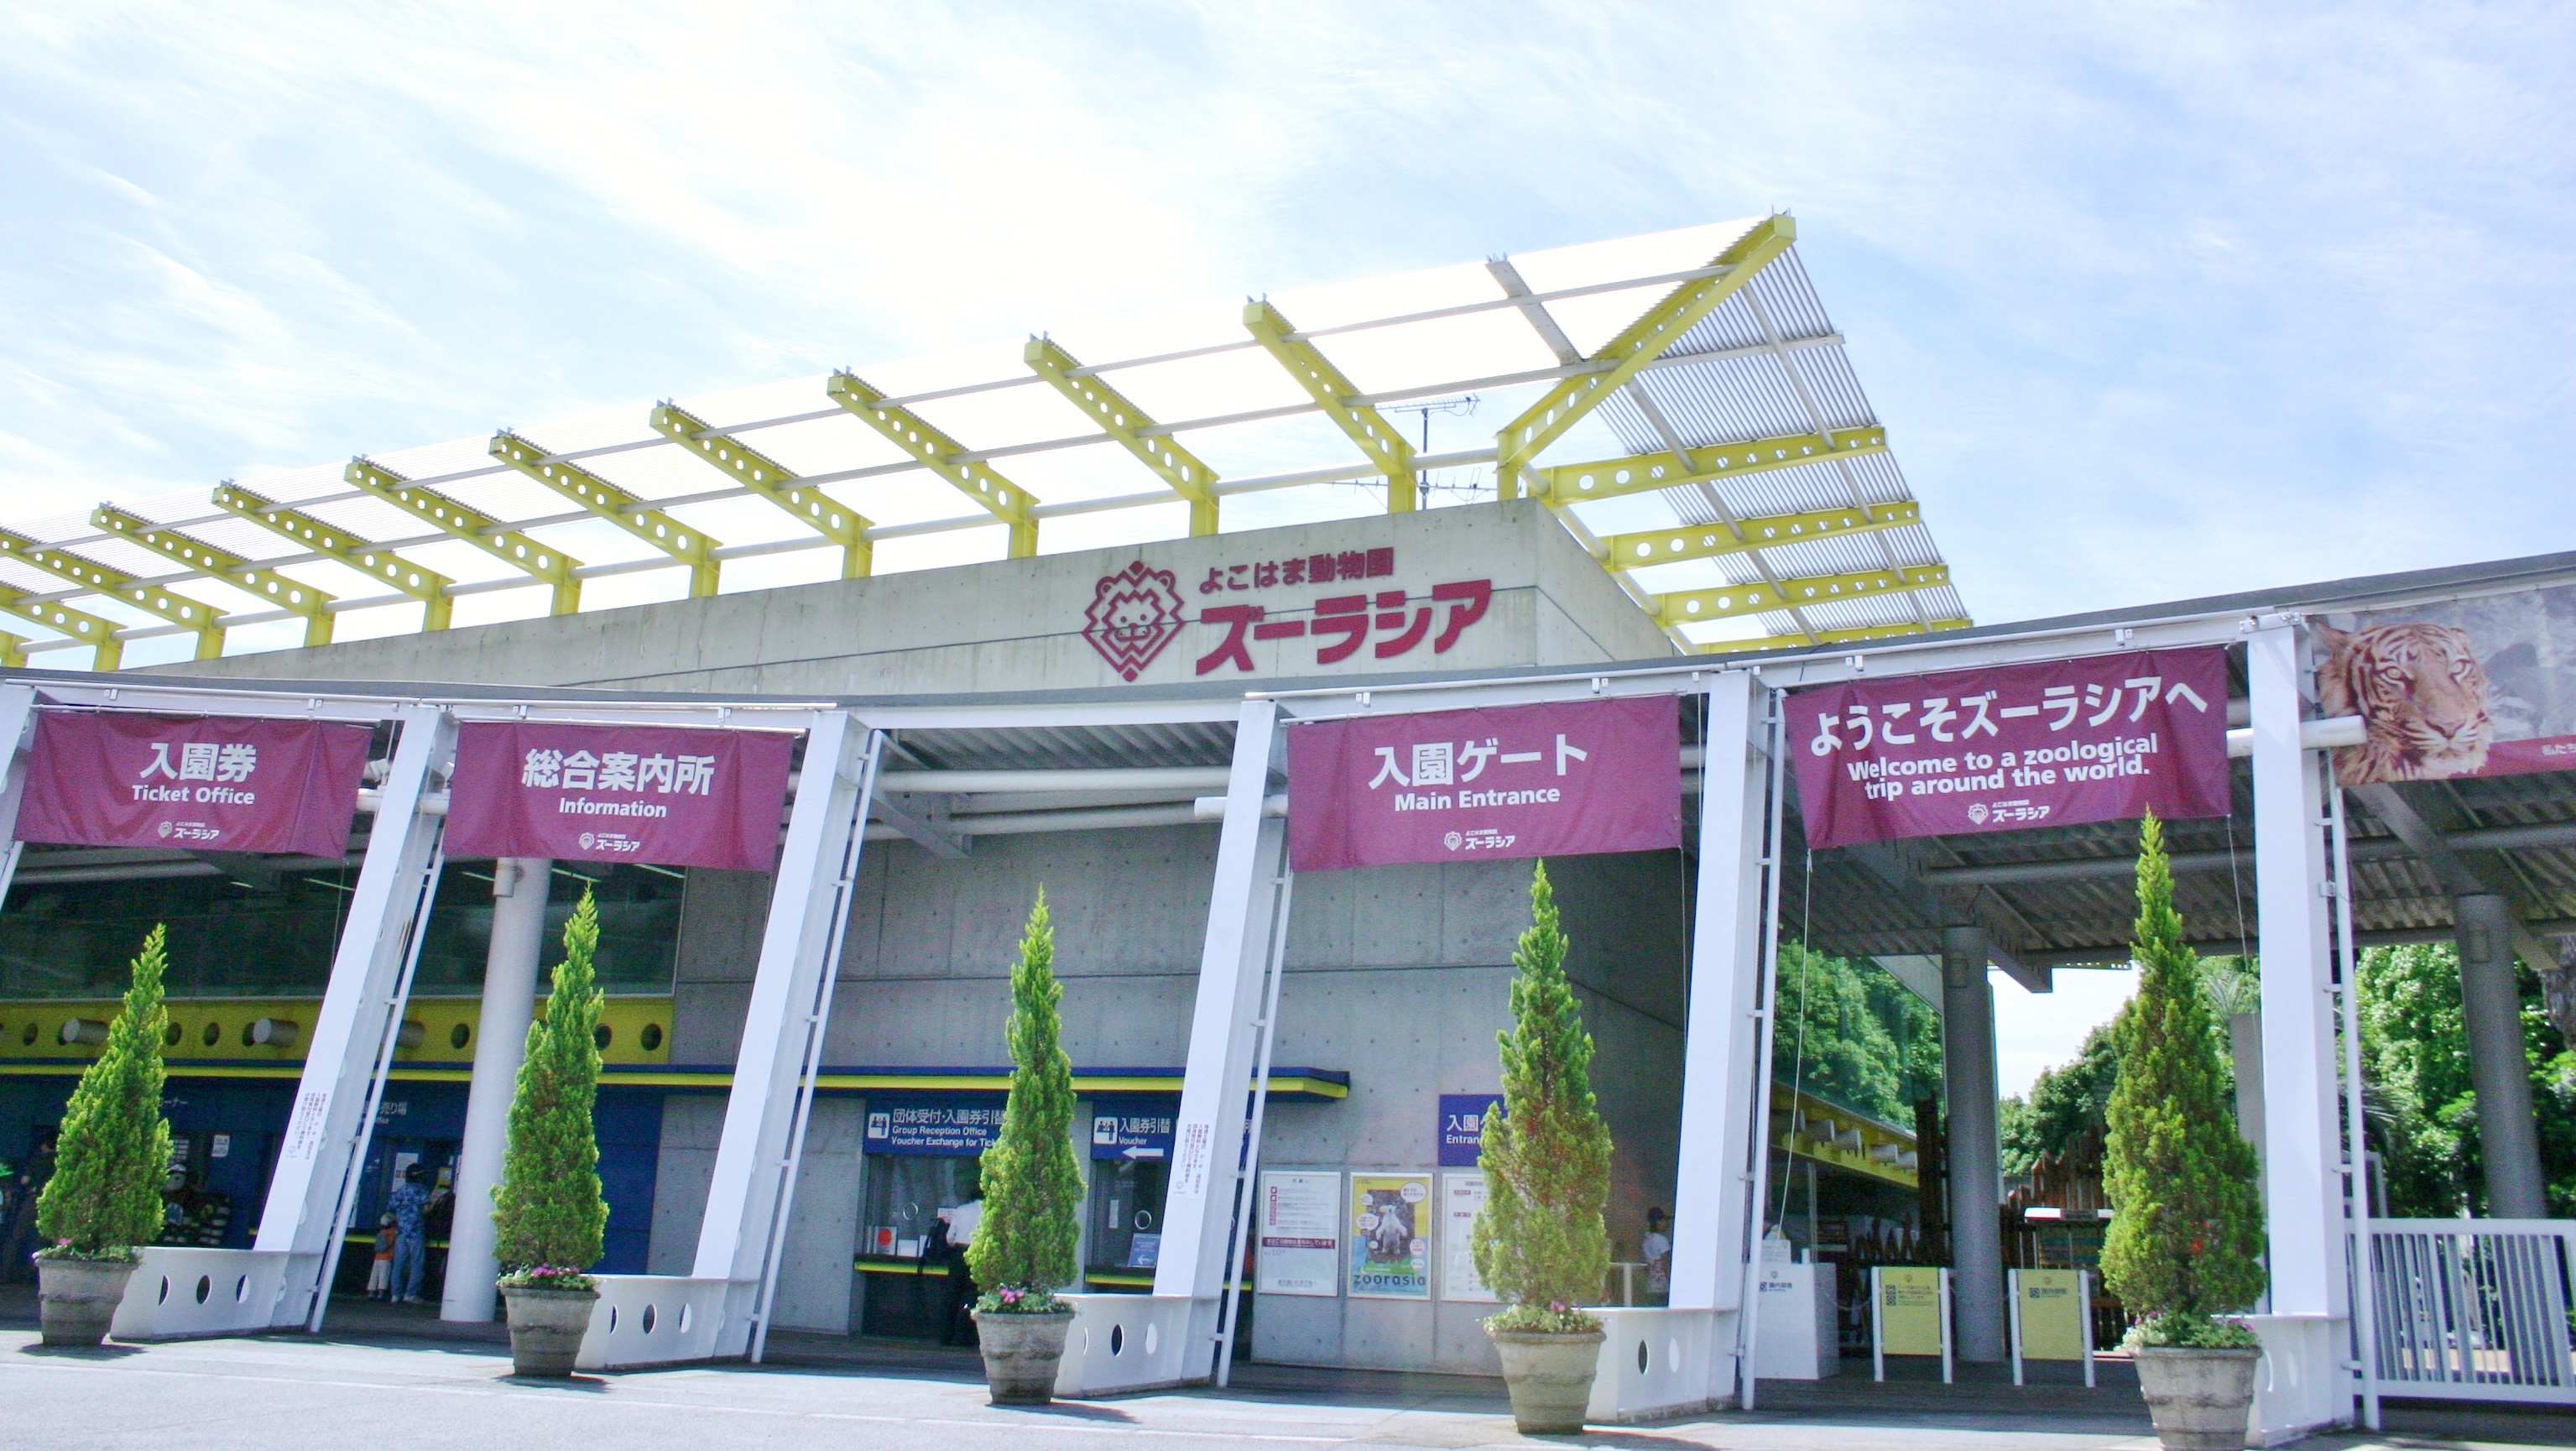 【よこはま動物園ズーラシア】JR横浜線・市営地下鉄 中山駅からバスで約15分